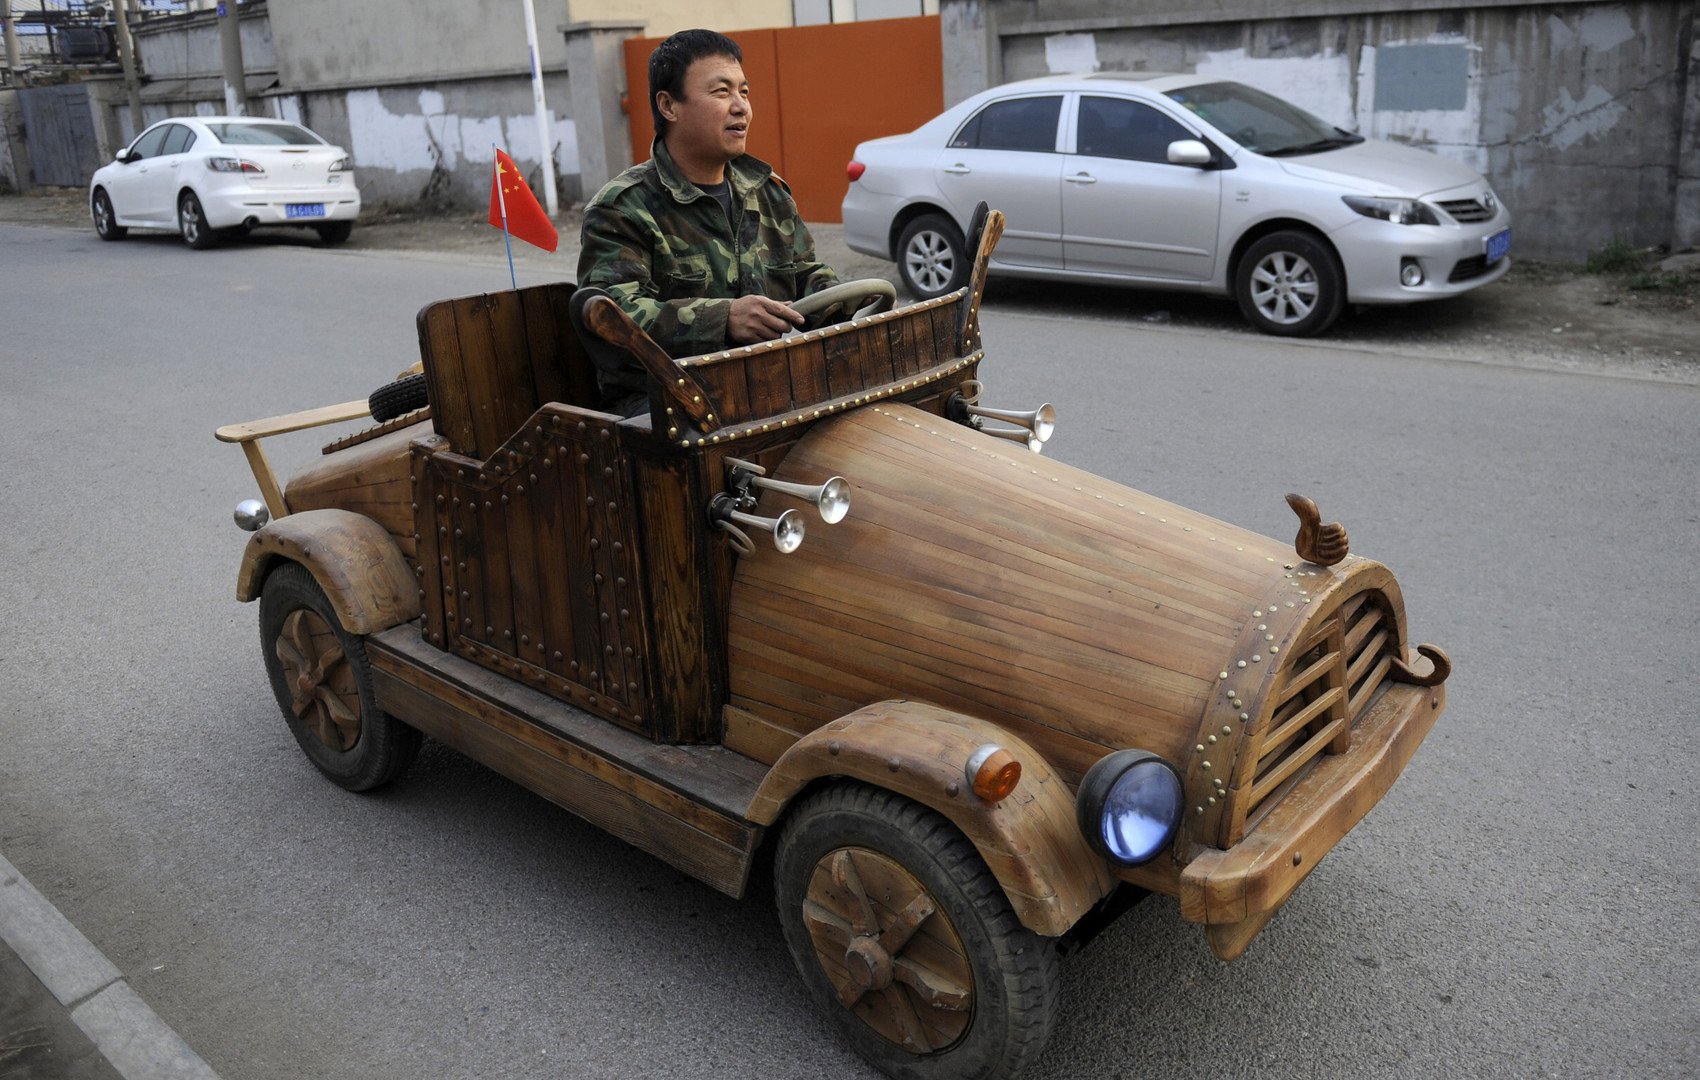 ليو فولونغ يختبر مركبته الكهربائية الخشبية المصنوعة يدويا في مقاطعة لياونينغ الصينية، 30 أكتوبر 2014